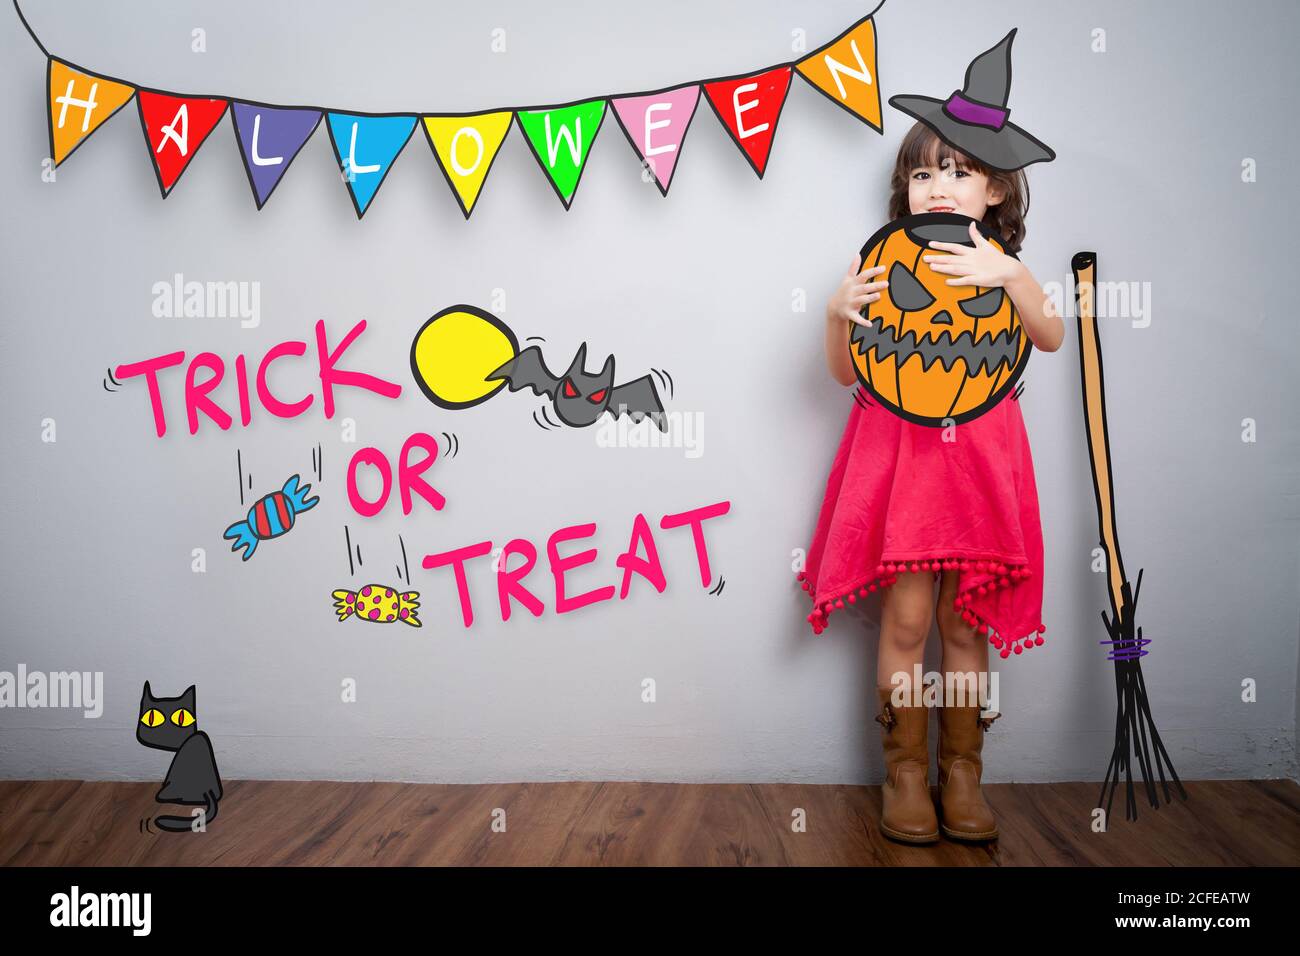 Ritratto di bambina carina con tema di decorazione del costume di Halloween con trucco o trattare parola in background Foto Stock